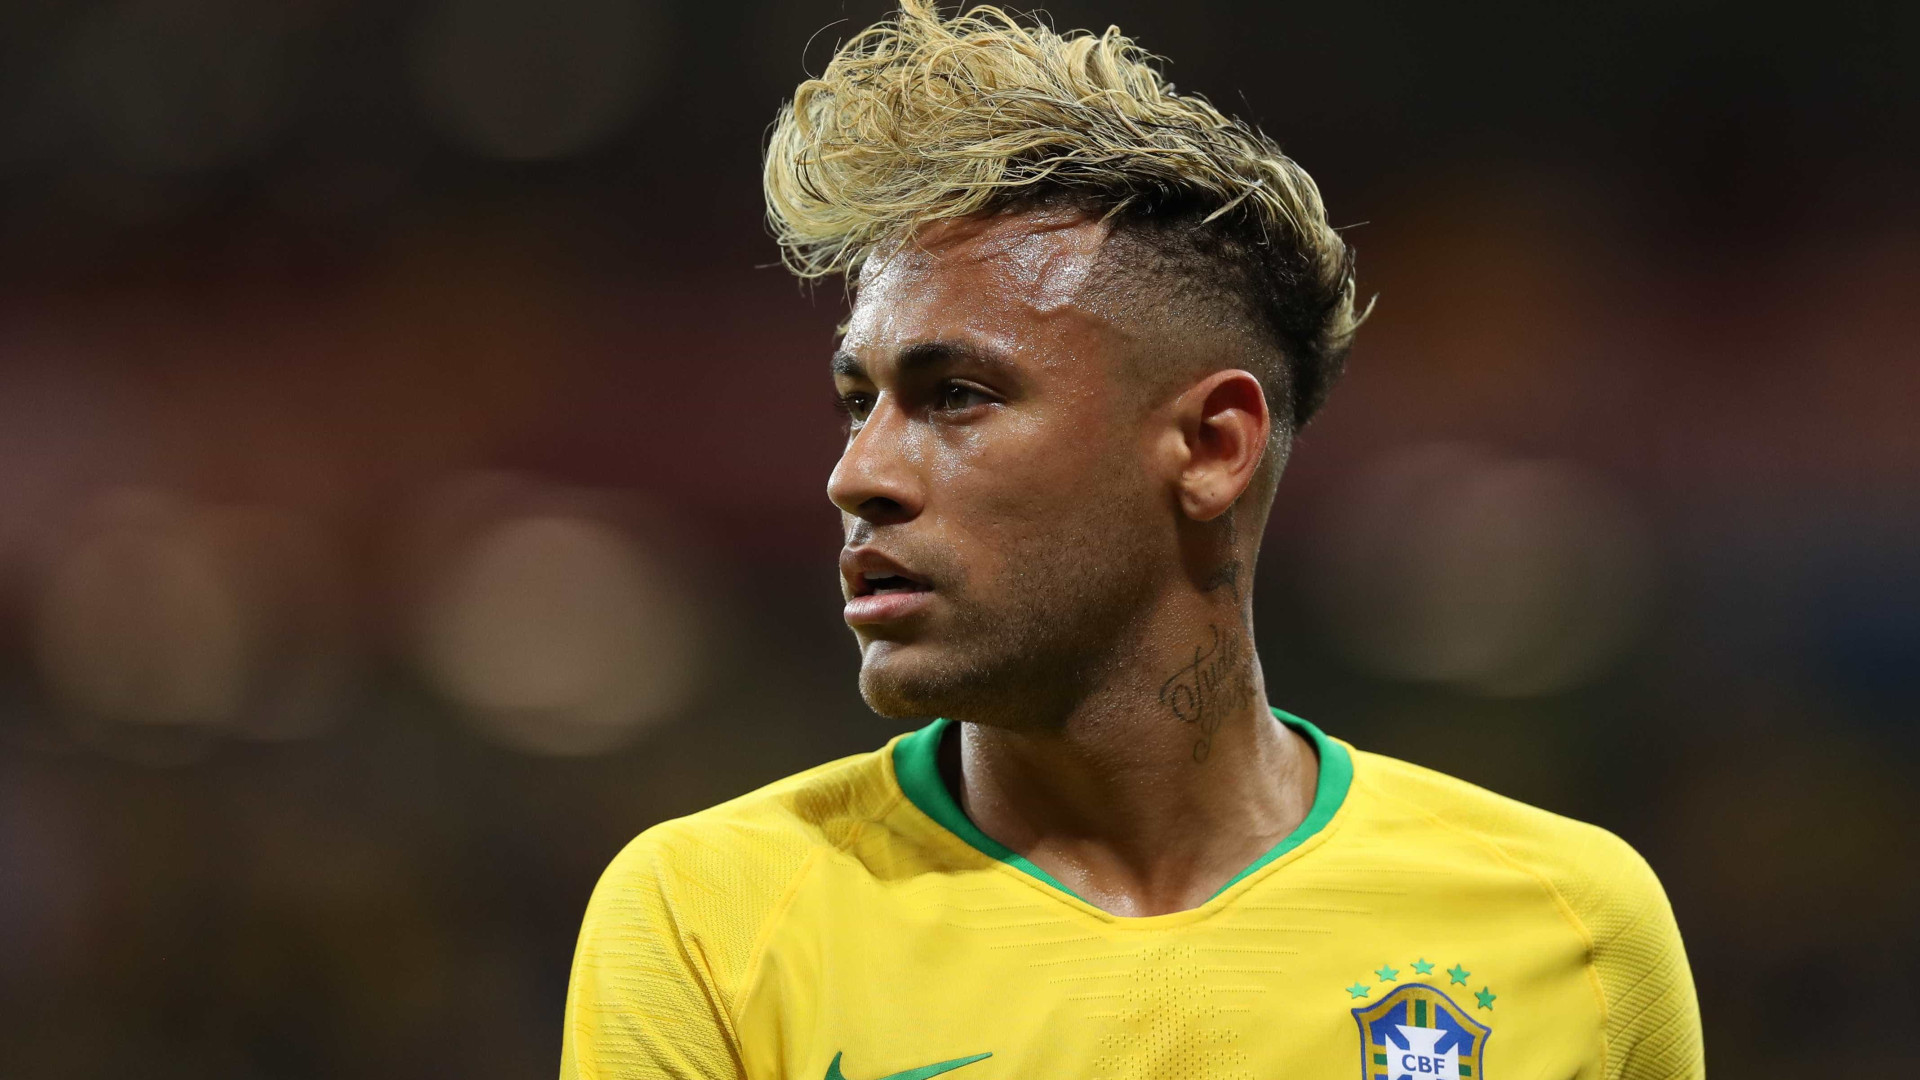 Brasil fica sem indicado ao melhor do mundo pela 1ª vez desde 2013